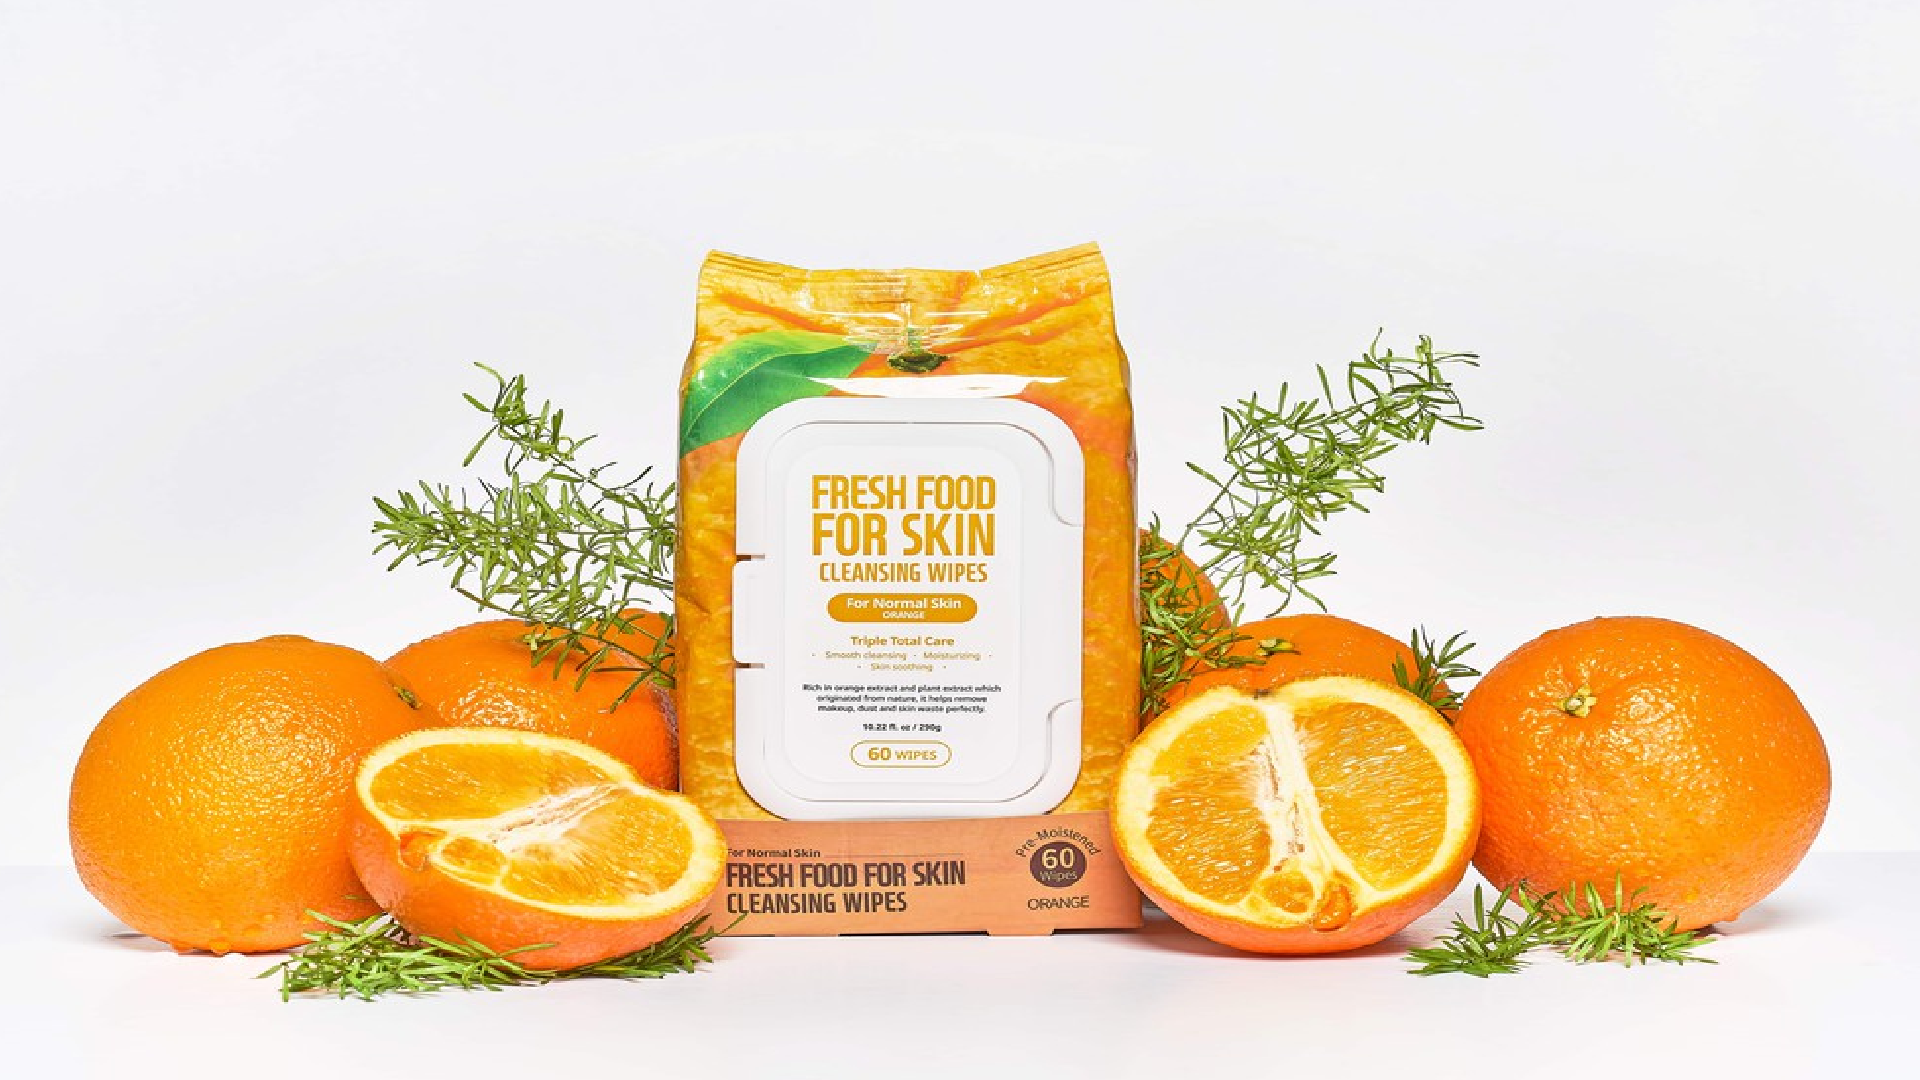 FARM SKIN,เช็ดชูทำความสะอาดใบหน้า,ผลิตภัณฑ์ทำความสะอาดใบหน้า,Fresh Food For Skin Facial Cleansing